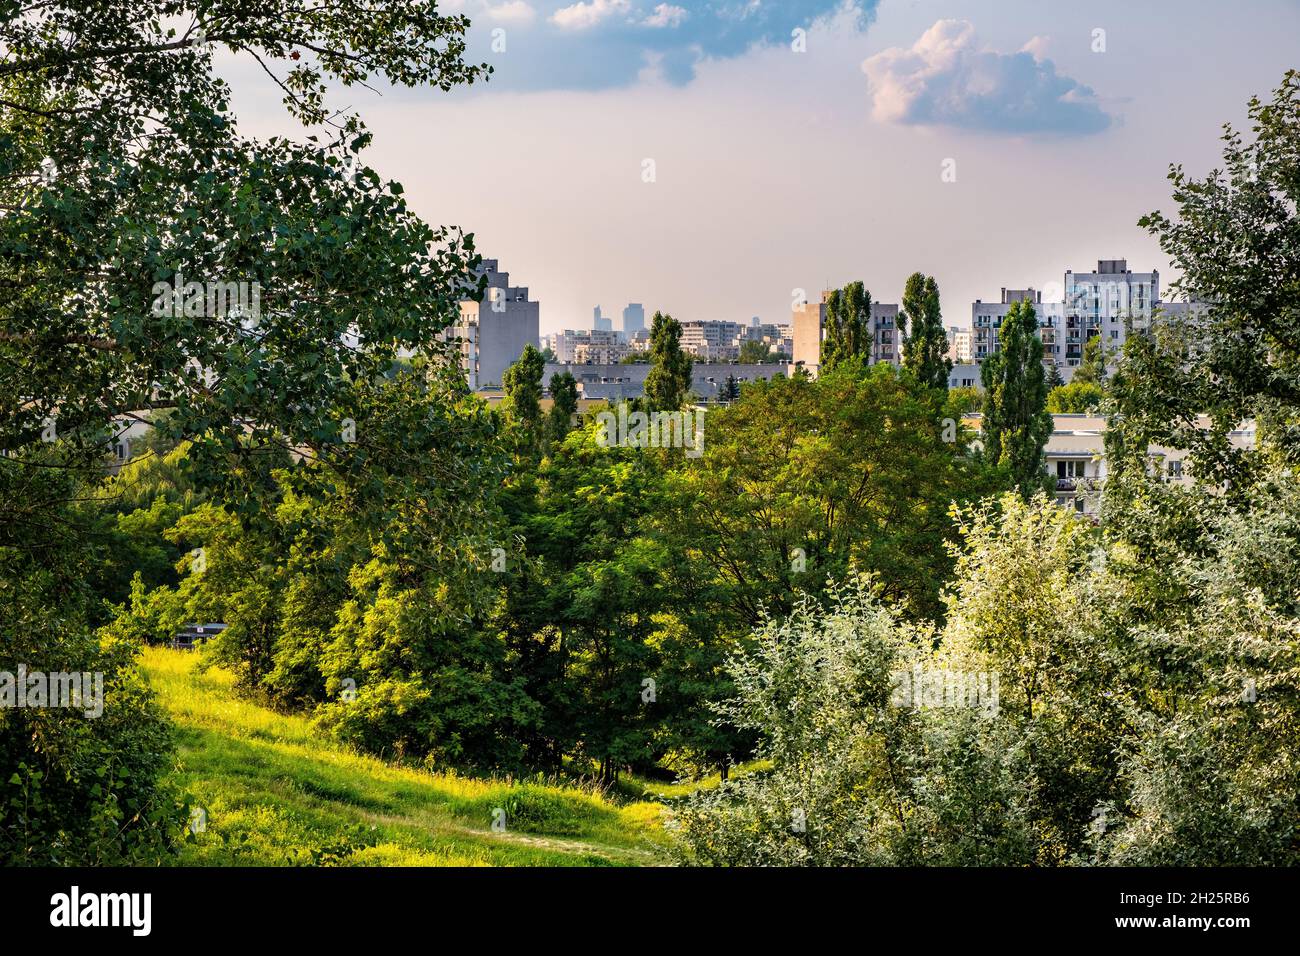 Varsavia, Polonia - 24 luglio 2021: Vista panoramica di Ursynow e del quartiere centrale di Środmiescie con intense aree residenziali vicino a Las Kabacki F. Foto Stock